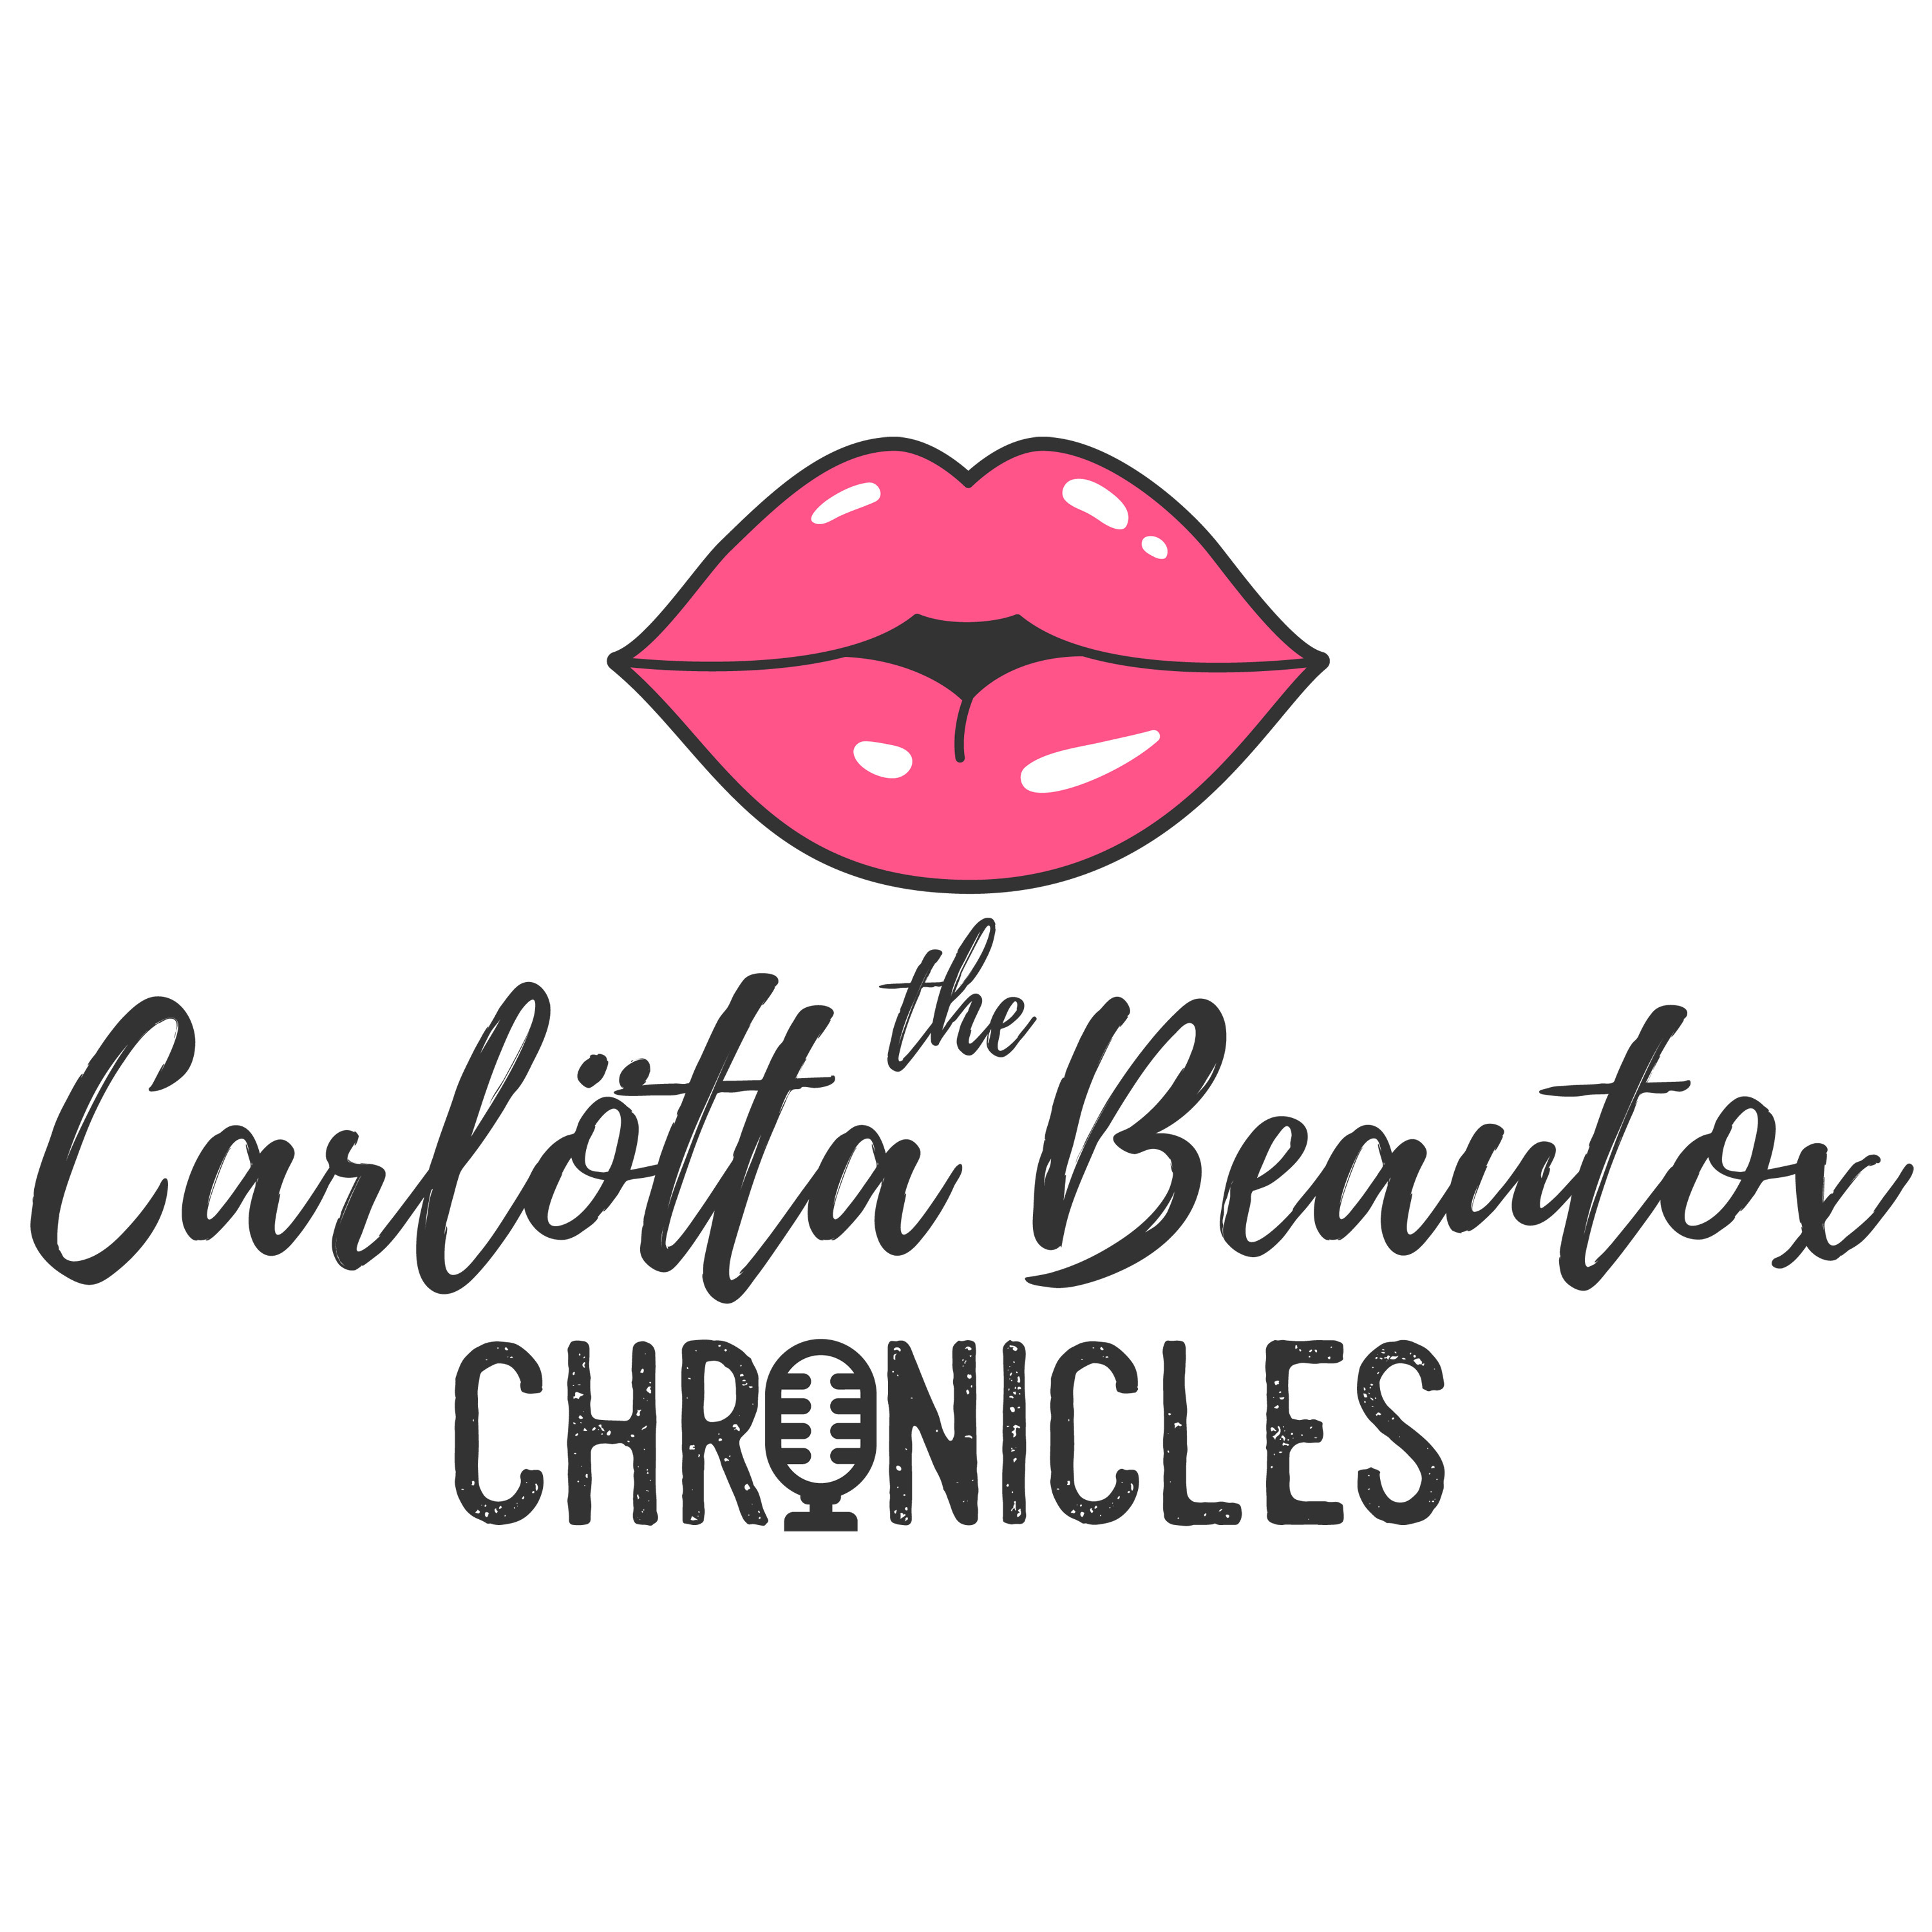 The Carlötta Beautox Chronicles